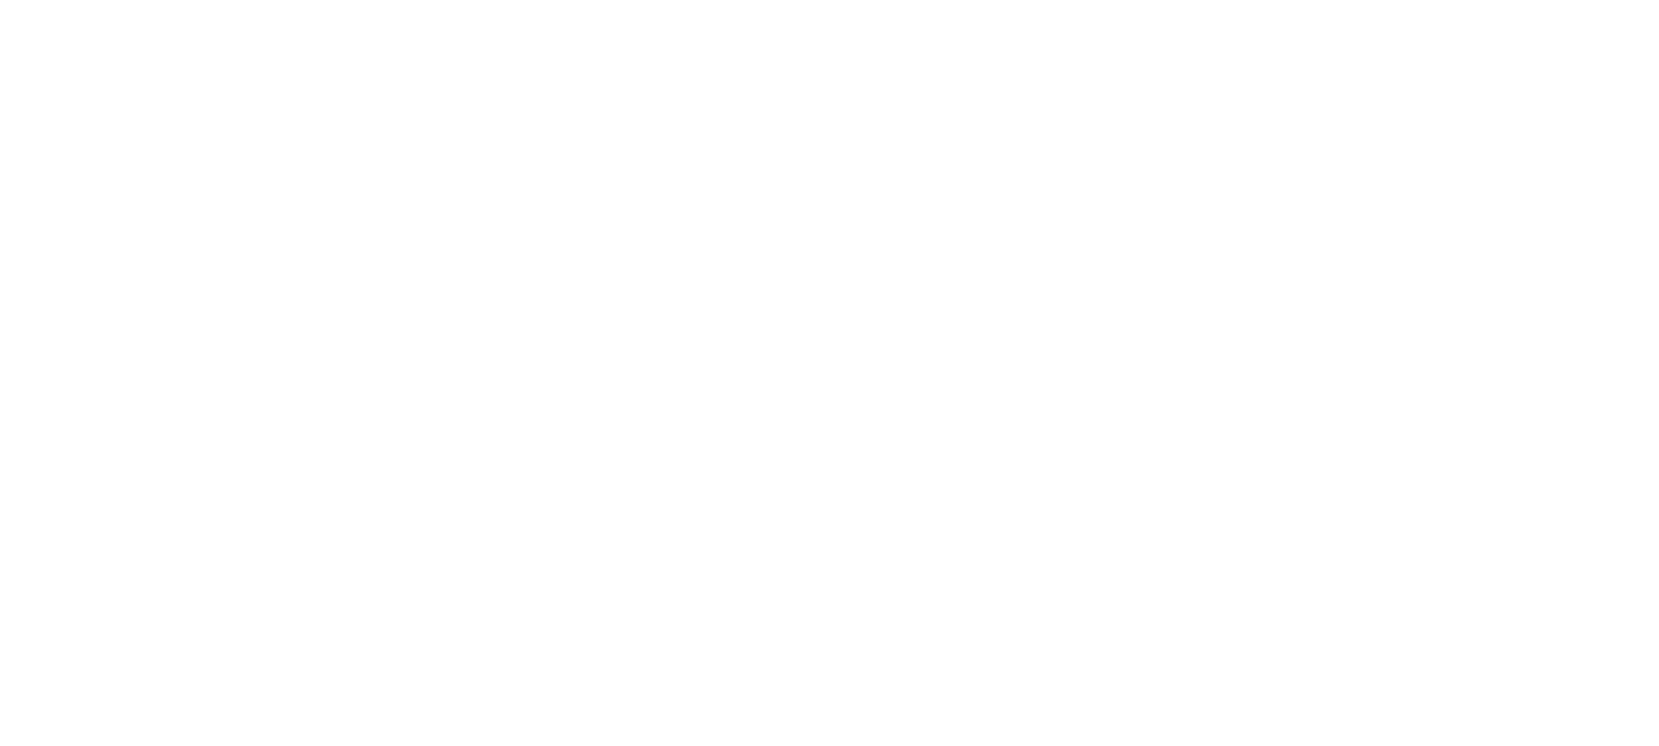 Amsterdam Historical Buidlings